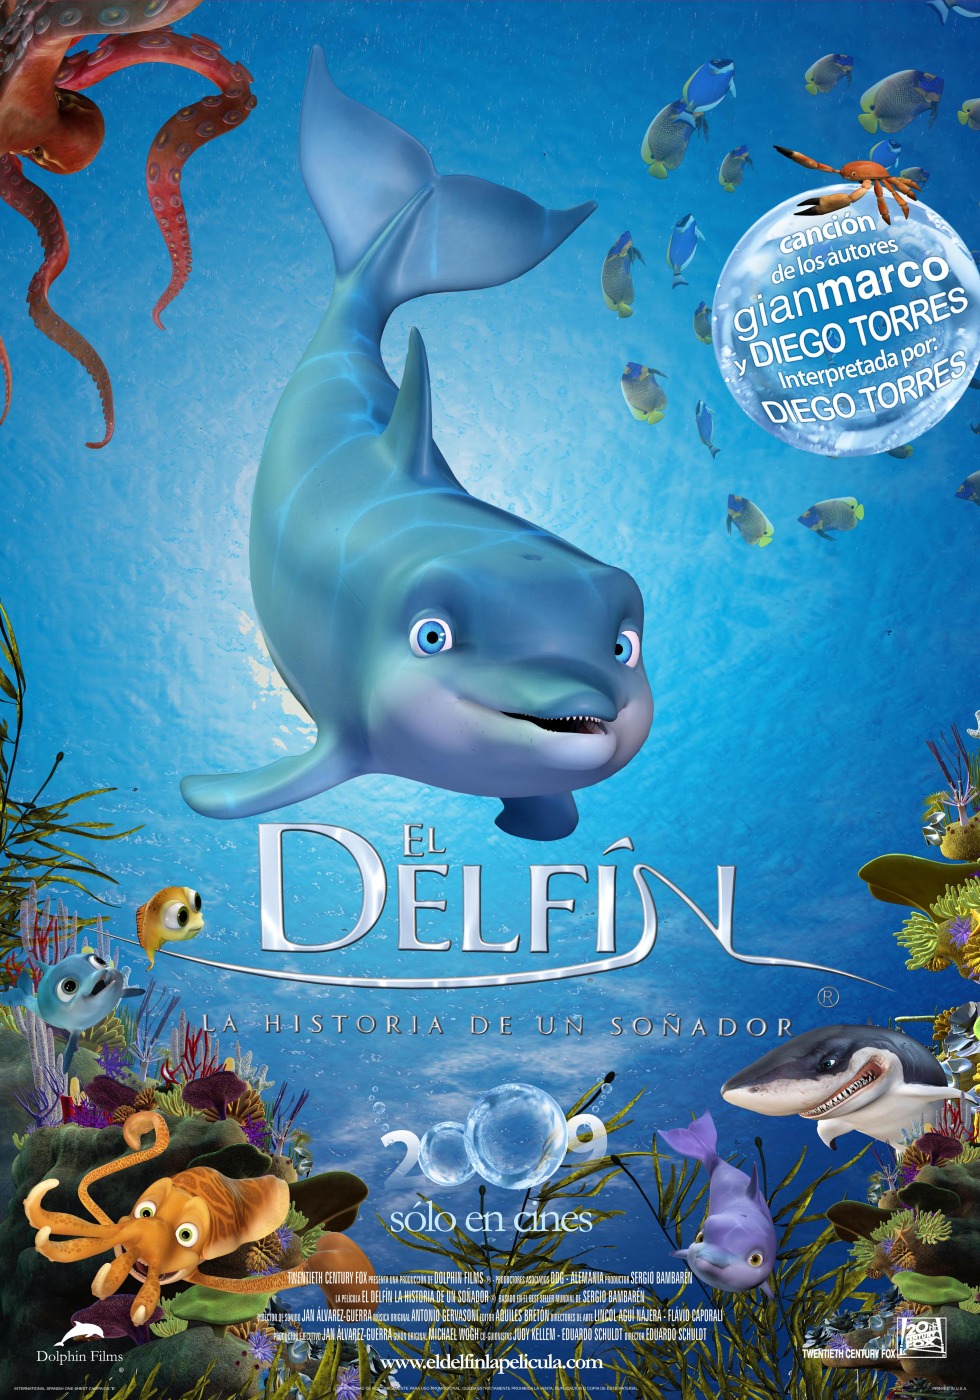 Дельфин: История мечтателя (2009) смотреть online